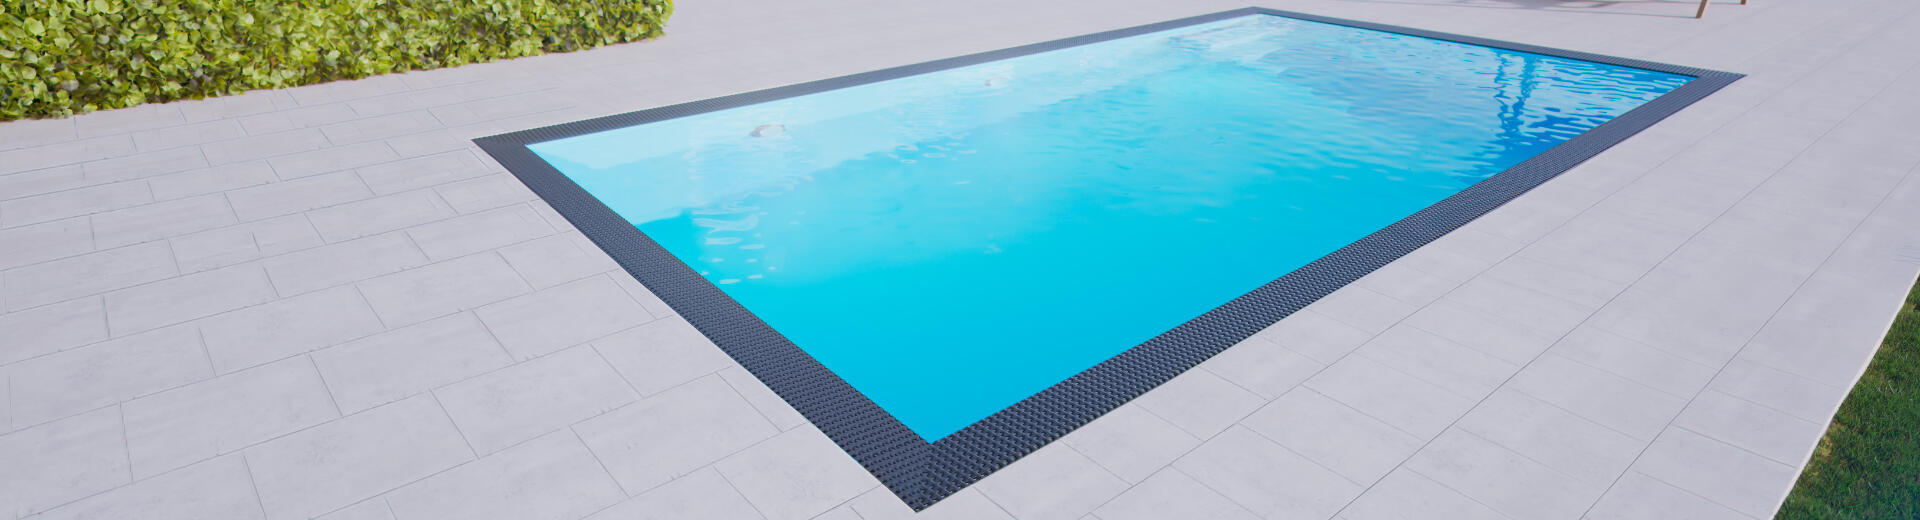 Přelivový bazén 3x7m